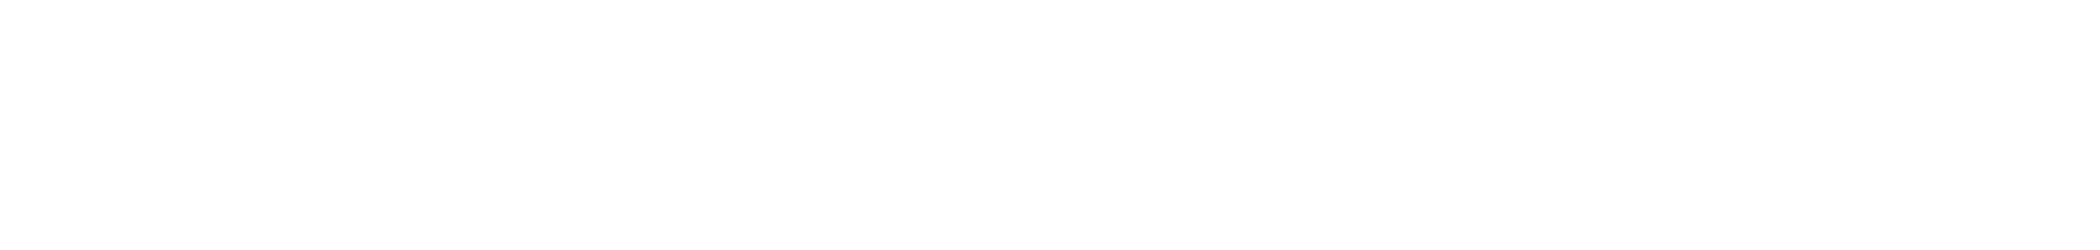 AT&T, Bank of America, and Valentino logos